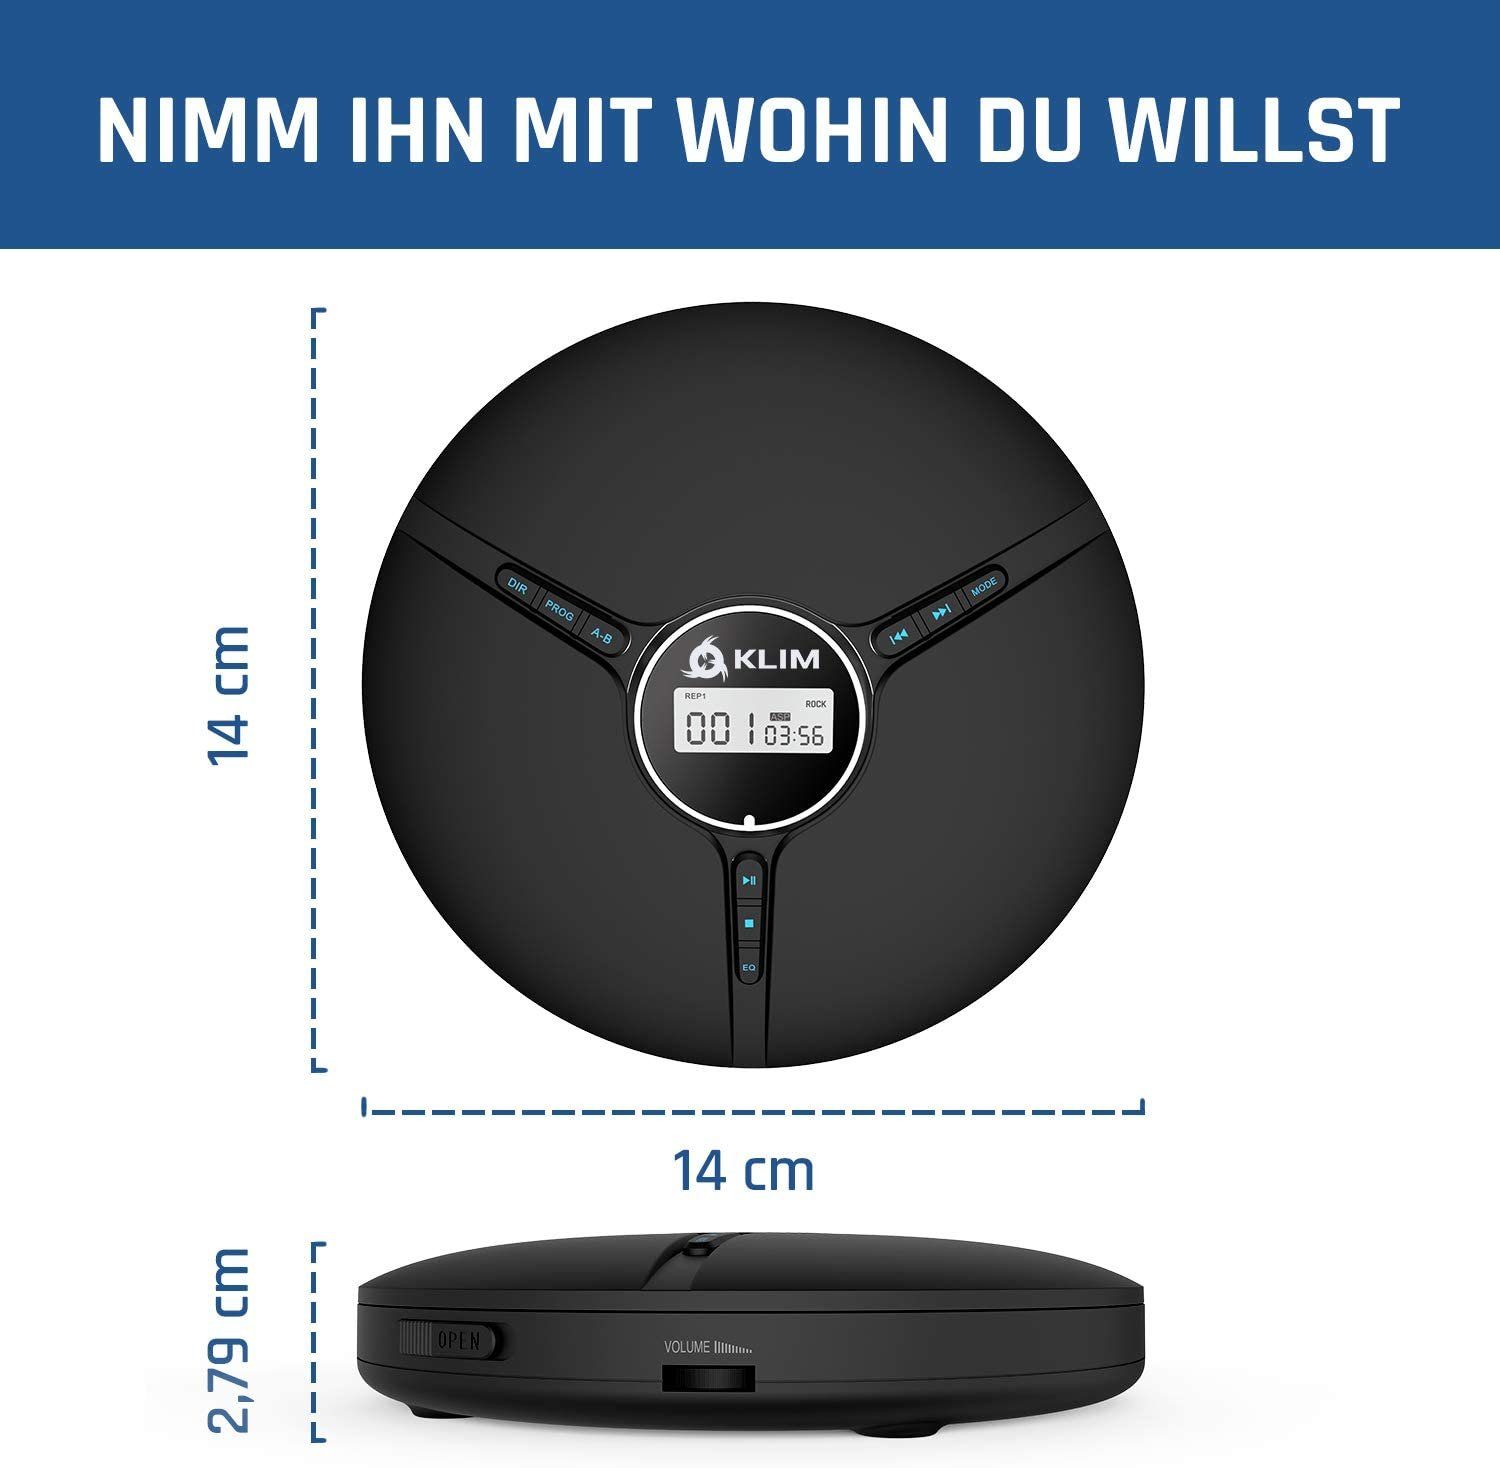 KLIM Tragbarer Player Kopfhörer CD-Spieler unverwechselbares Hörerlebnis) (hochwertiger Stereo-CD Discman, inklusive für Scharz